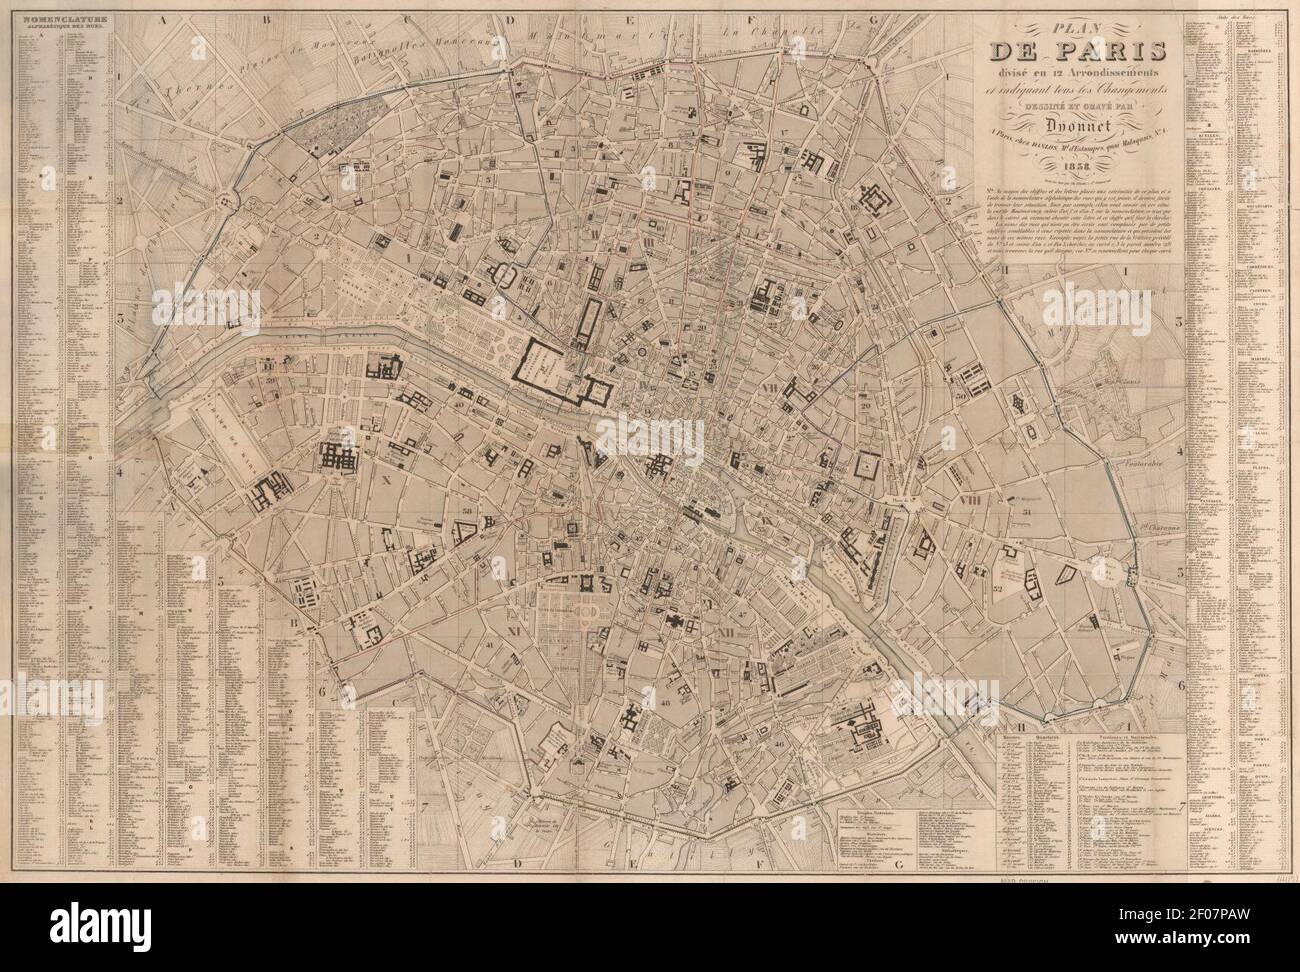 Plan de Paris, divisé en 12 arrondissements by Dyonnet, 1838 - Stanford Libraries. Stock Photo